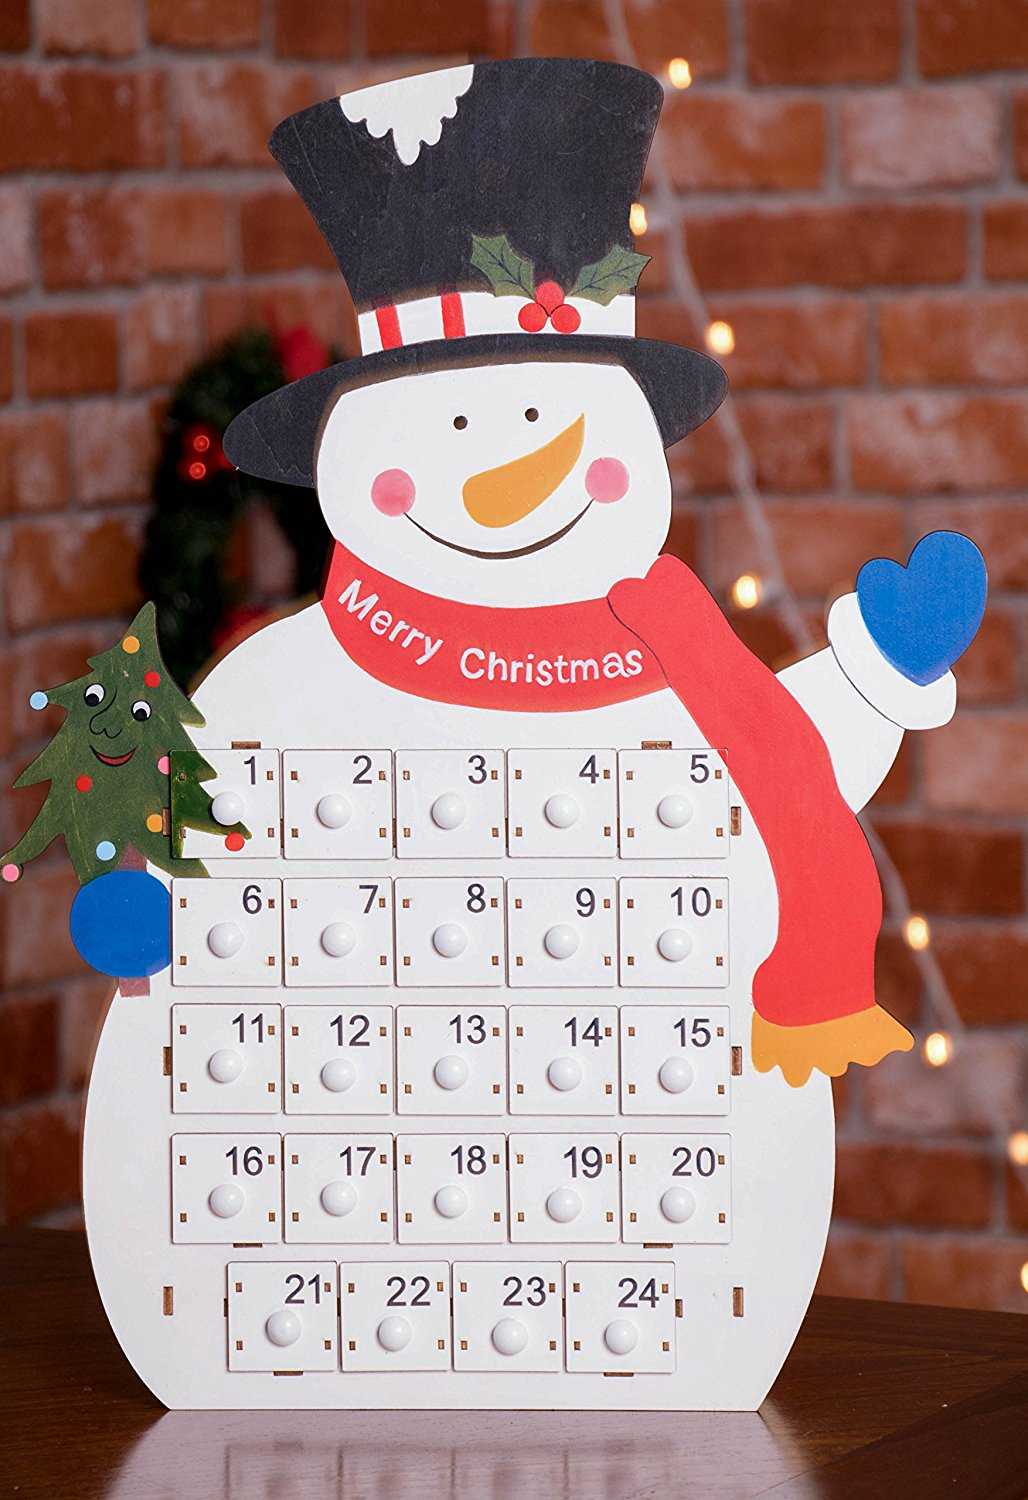 Календарь своими руками — пошаговая инструкция как сделать настольный и настенный календарь. настольный календарь своими руками